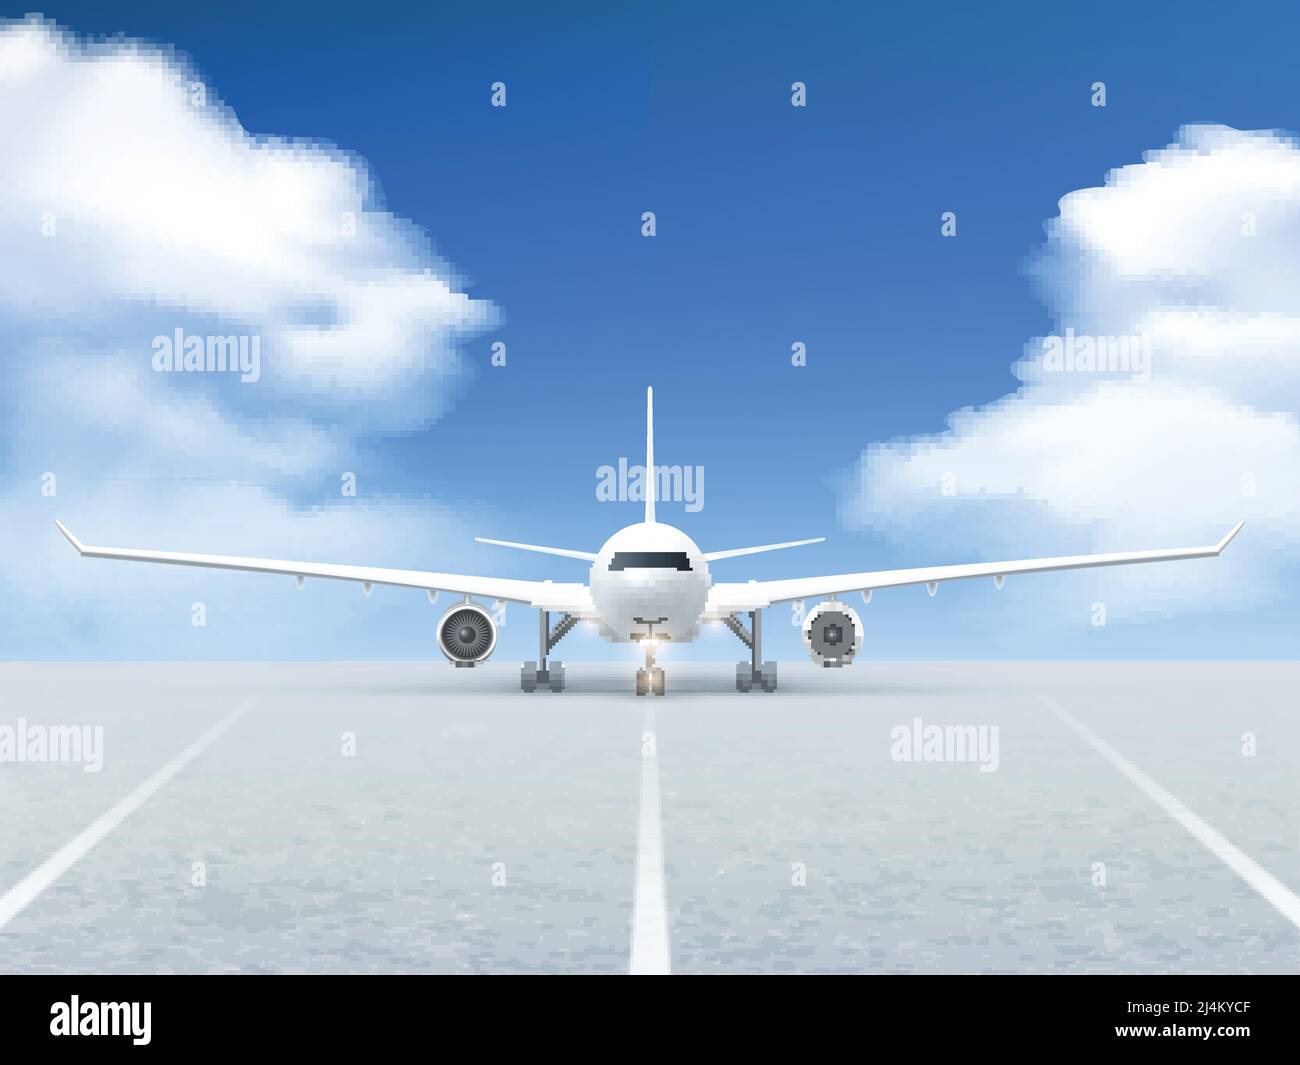 White Plane bereitet sich auf den Start von der Landebahn Poster Auf einem realistischen blauen Hintergrund und Straßenbelag Vektor-Illustration Stock Vektor